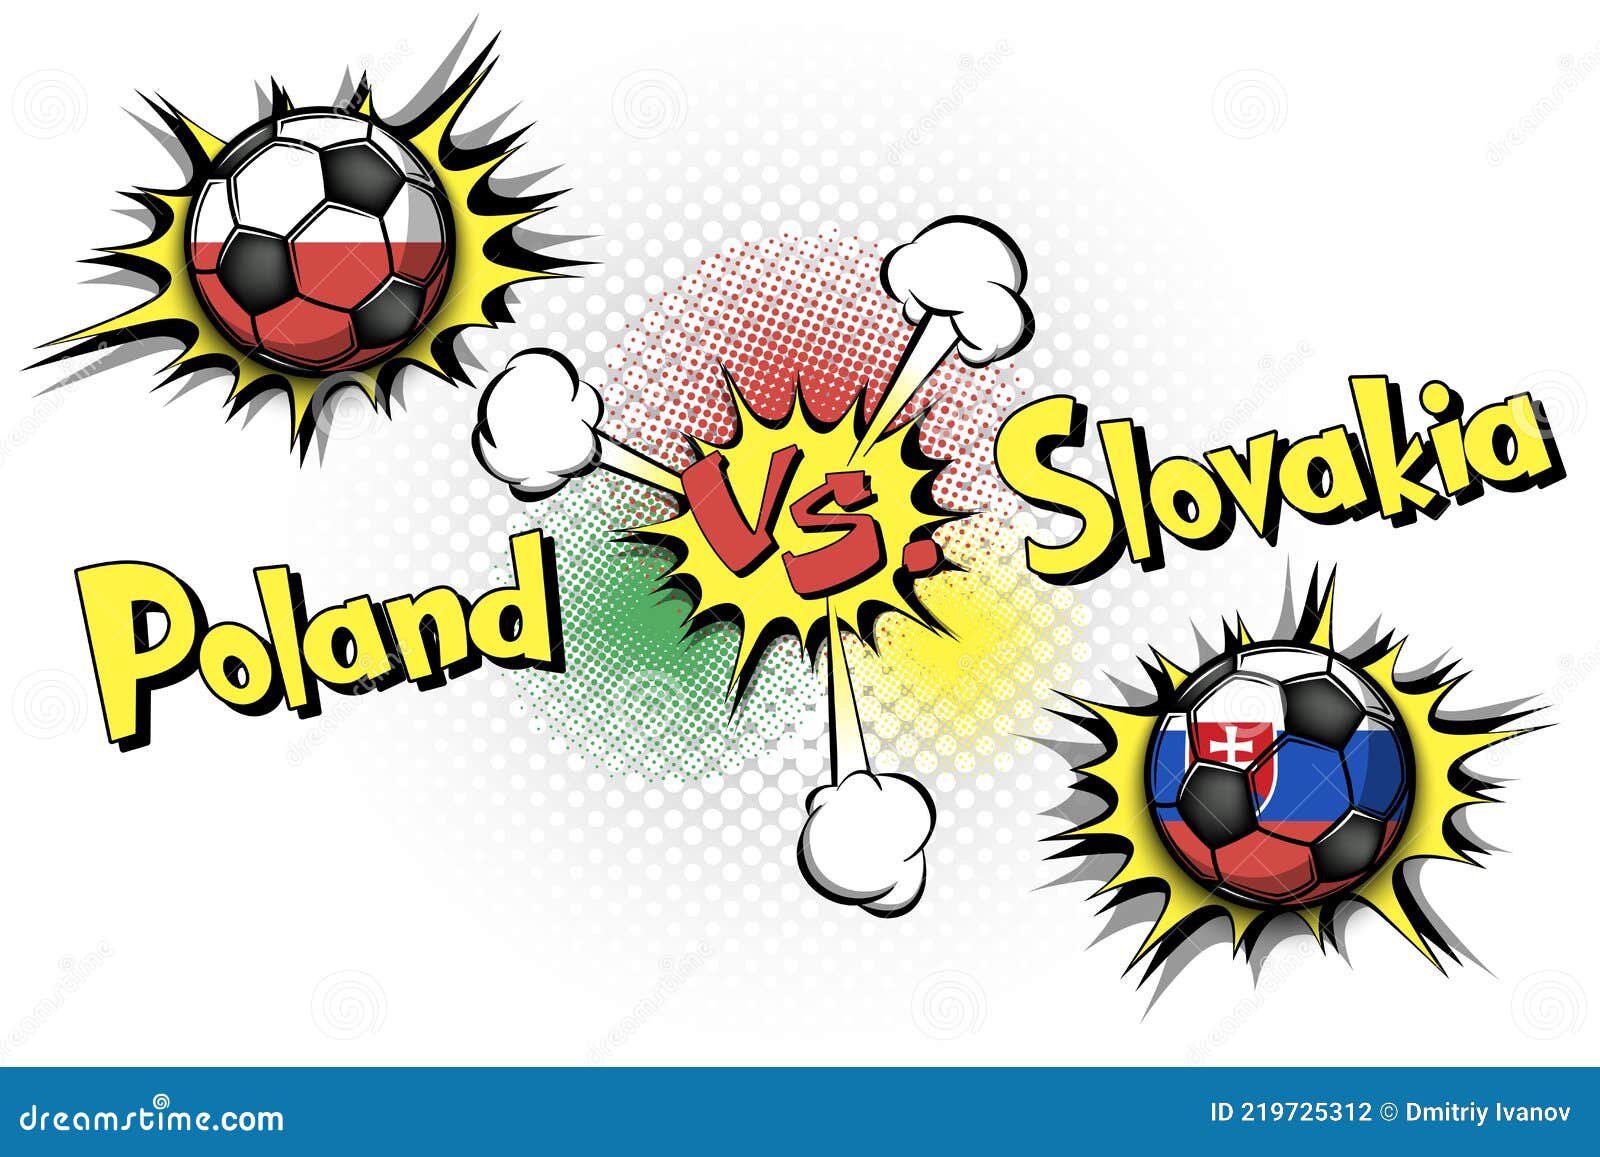 Poland vs slovakia